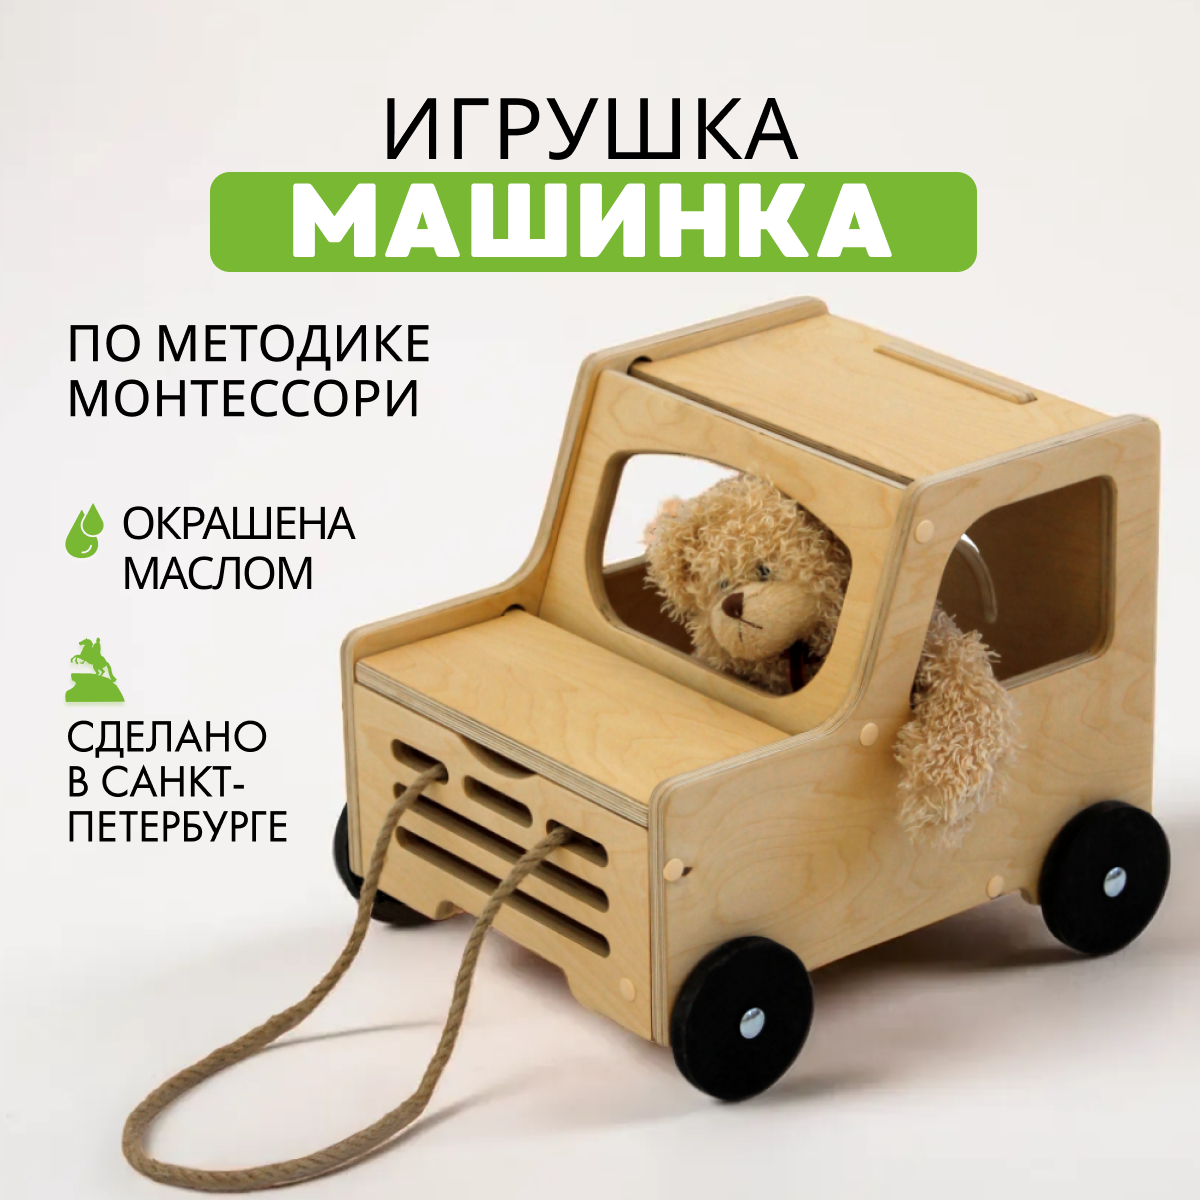 Деревянная игрушка Машинка по методике Монтессори